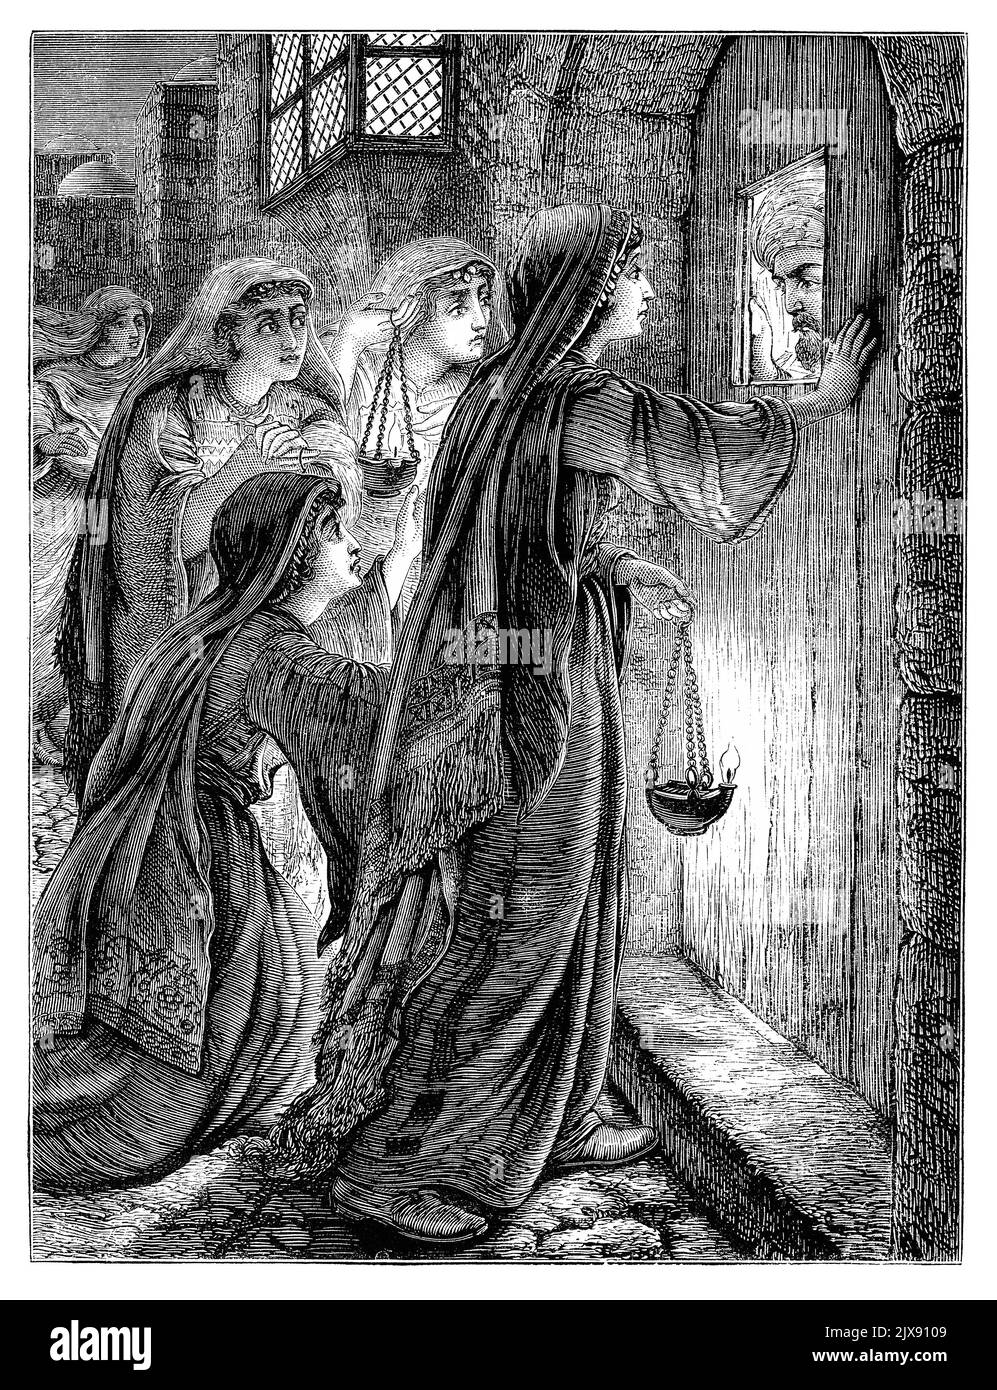 1872 viktorianischer Vintage-Stich des Gleichnisses von den zehn Jungfrauen (auch bekannt als das Gleichnis von den weisen und törichten Jungfrauen), der zeigt, dass den fünf törichten Jungfrauen die Aufnahme zum Bräutigam verweigert wurde. Stockfoto